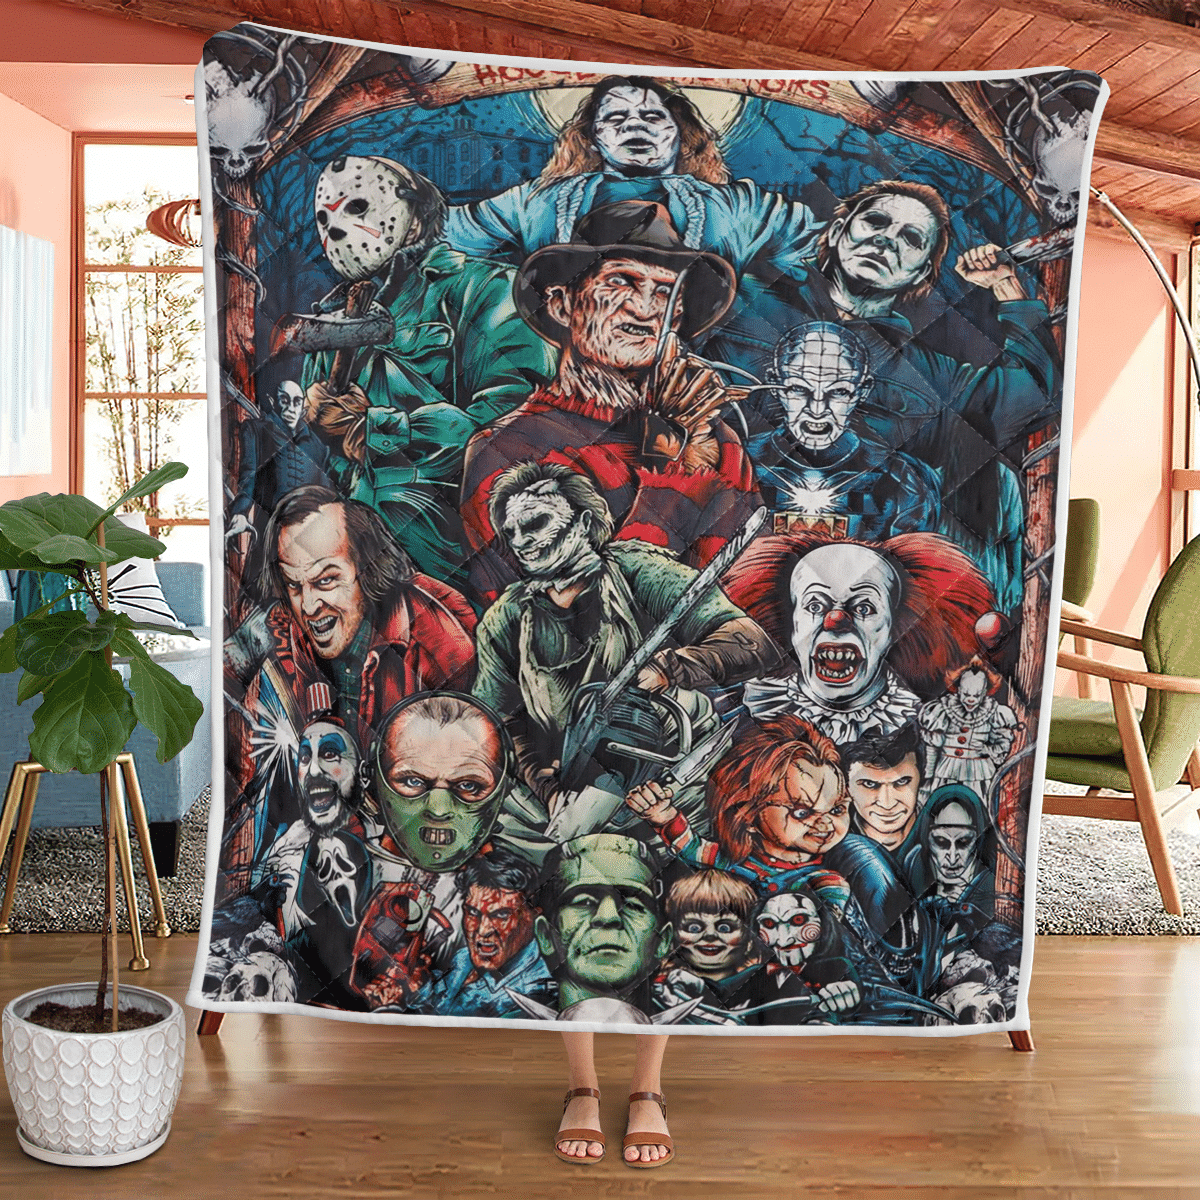 House Of Horrors Fleece Blanket - Quilt